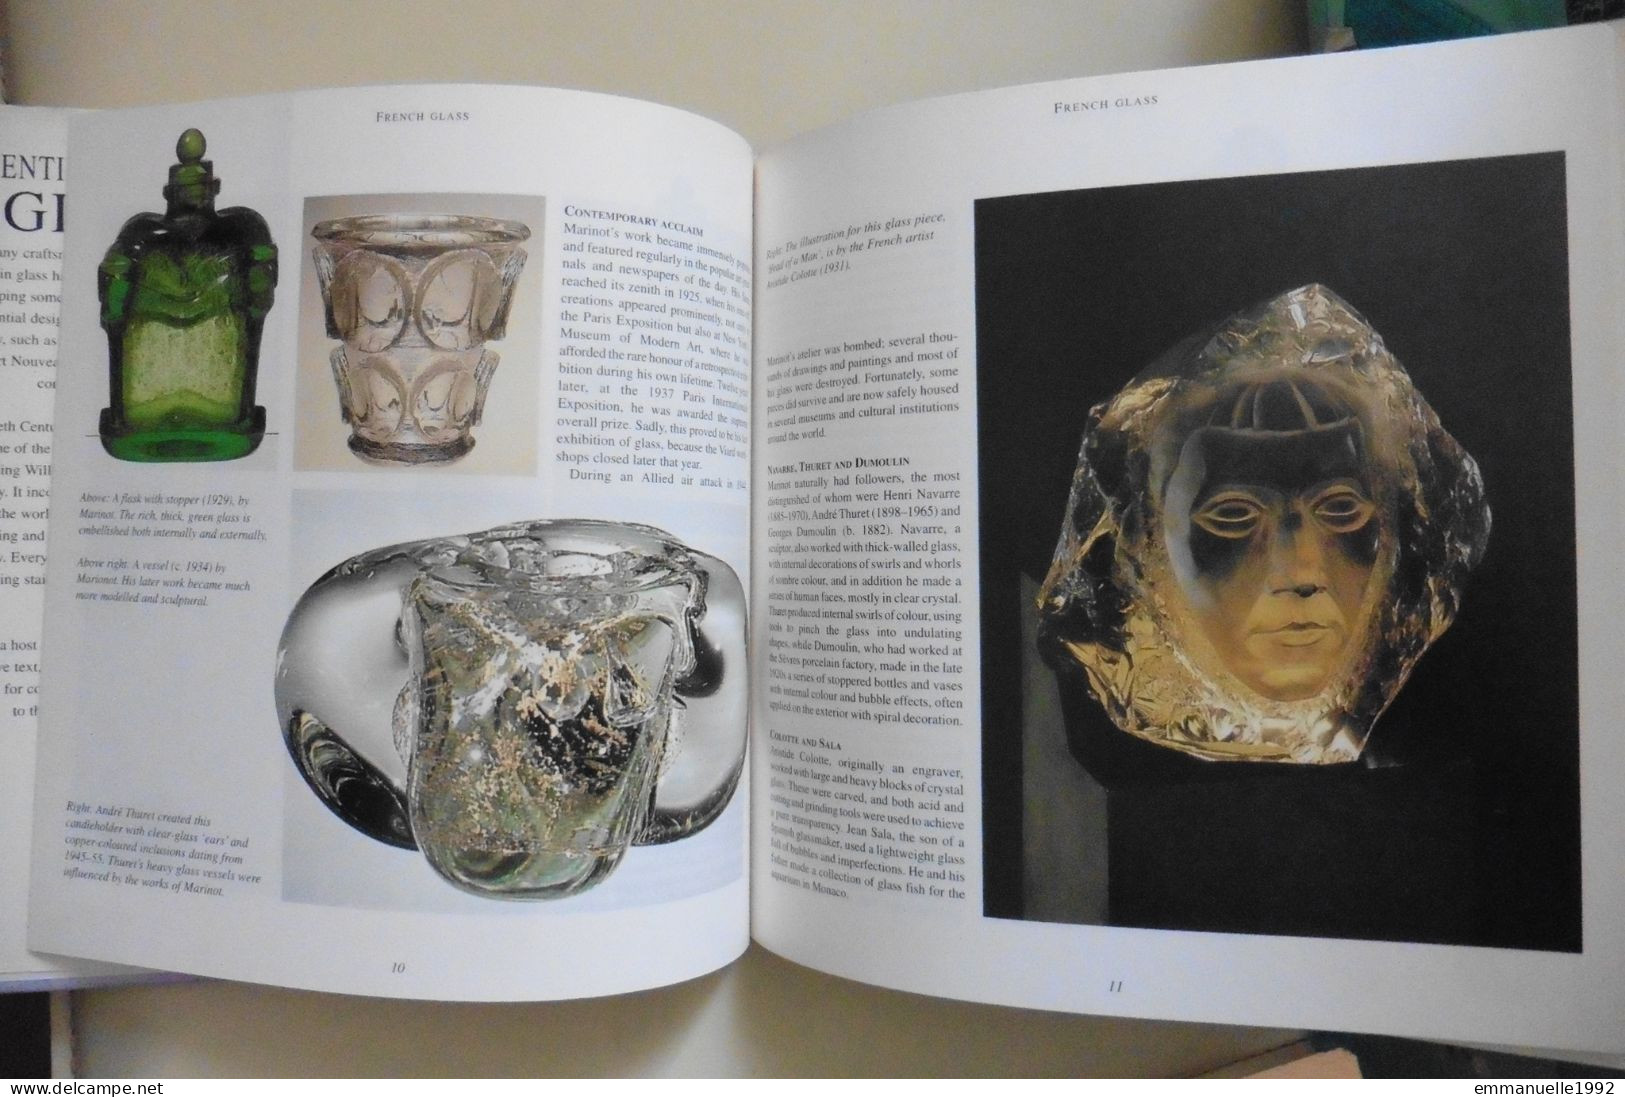 Livre Twentieth Century Glass - Le Verre Au 20e Siècle Art Deco Lalique Baccarat Tiffany Etc - English Text - Fine Arts